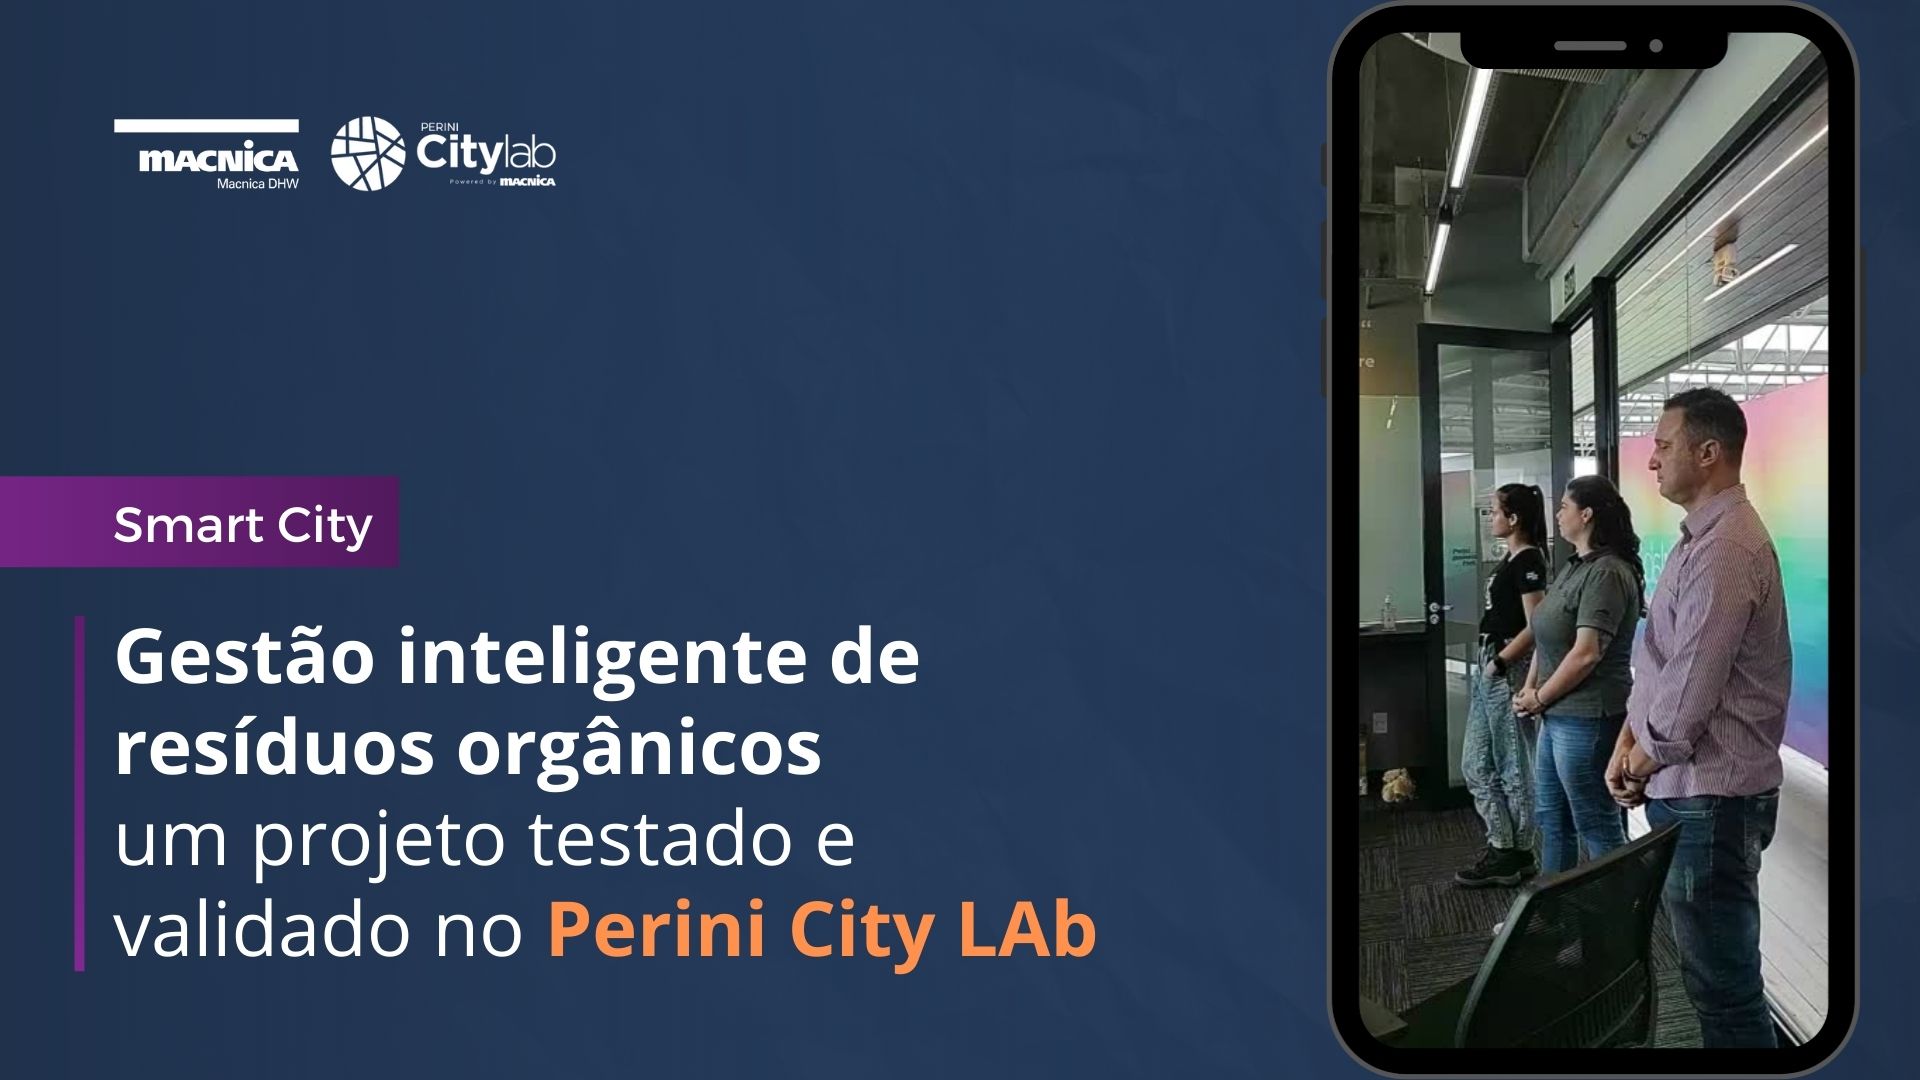 Gestão inteligente de resíduos orgânicos – um projeto testado e validado no Perini City Lab.